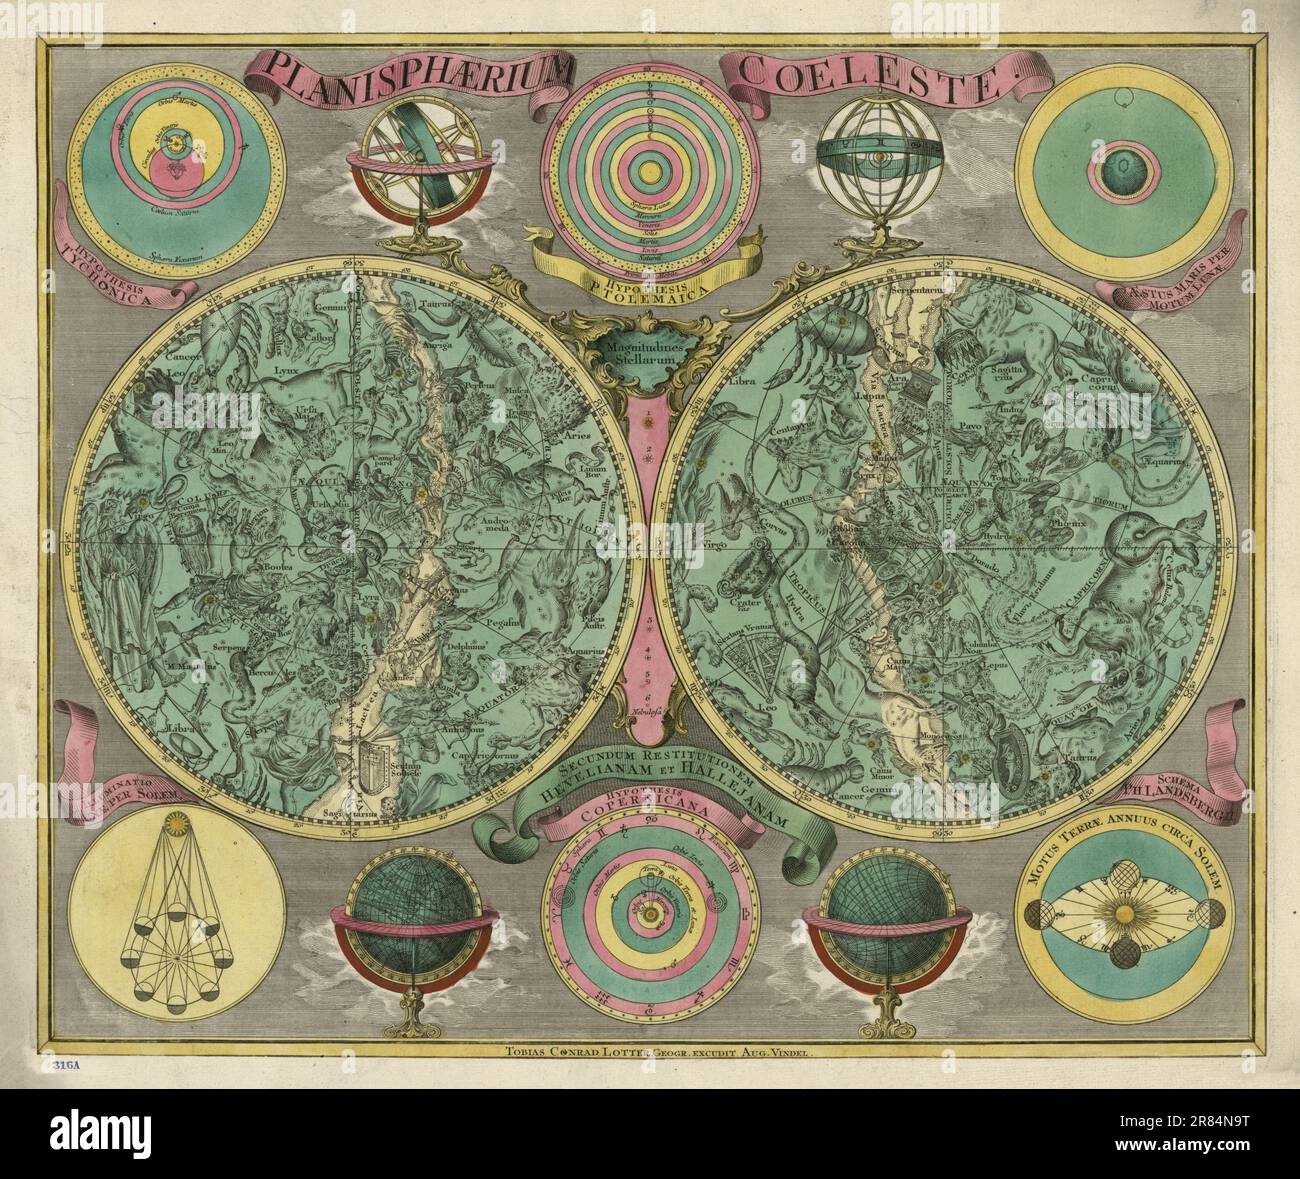 Une carte céleste très décorative à deux hémisphères, centrée sur des pôles, ornée de plus petits diagrammes circulaires illustrant des théories astronomiques Banque D'Images